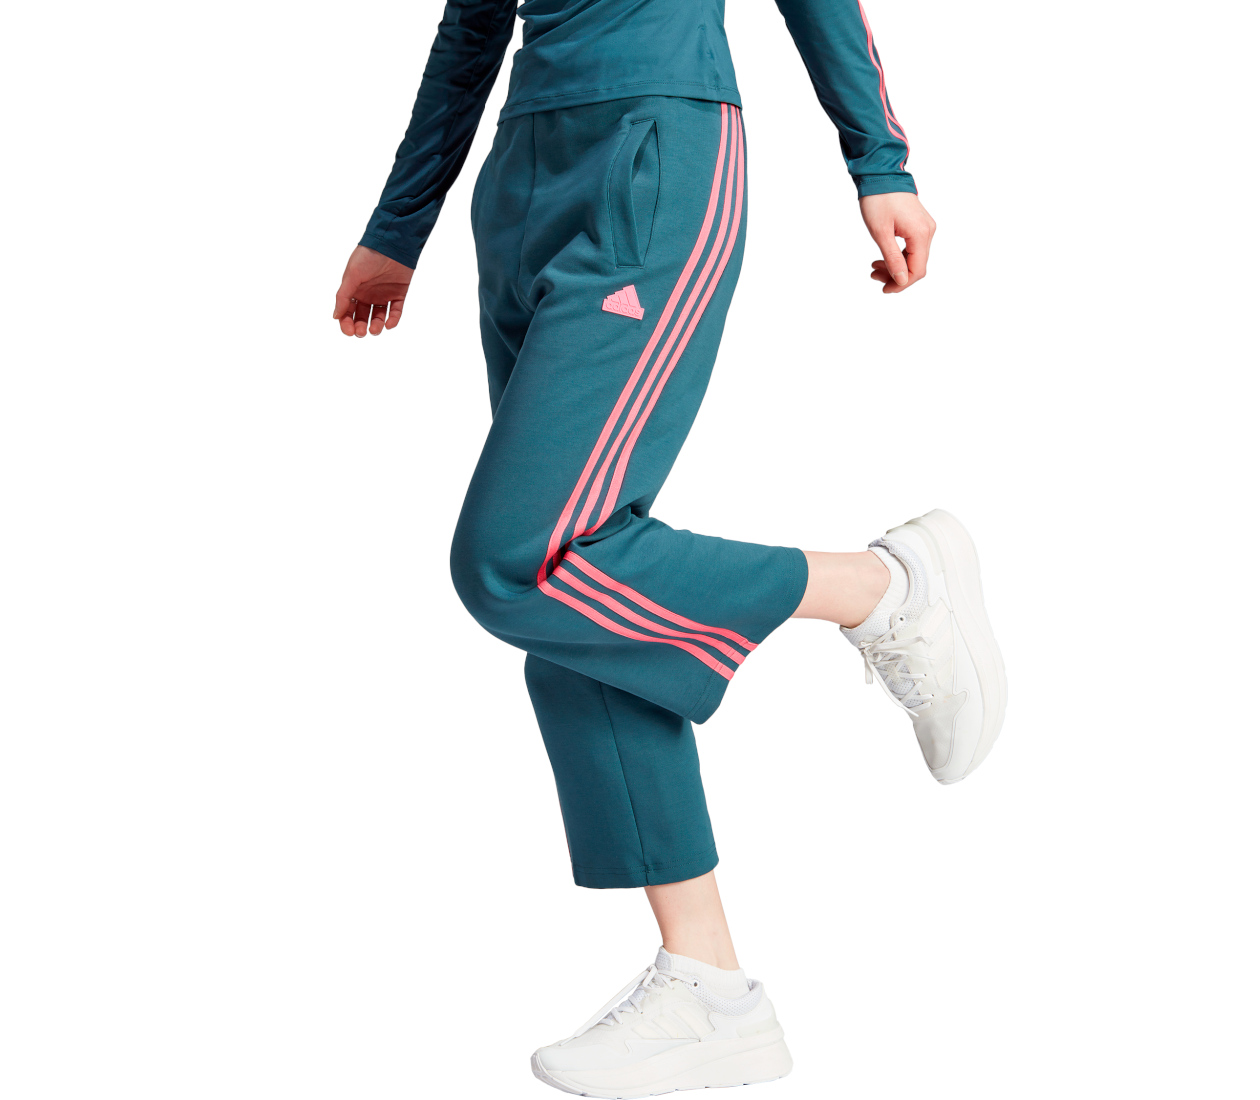 Adidas W FI 3S FLR (W) pantaloni sportivi donna | LBM Sport